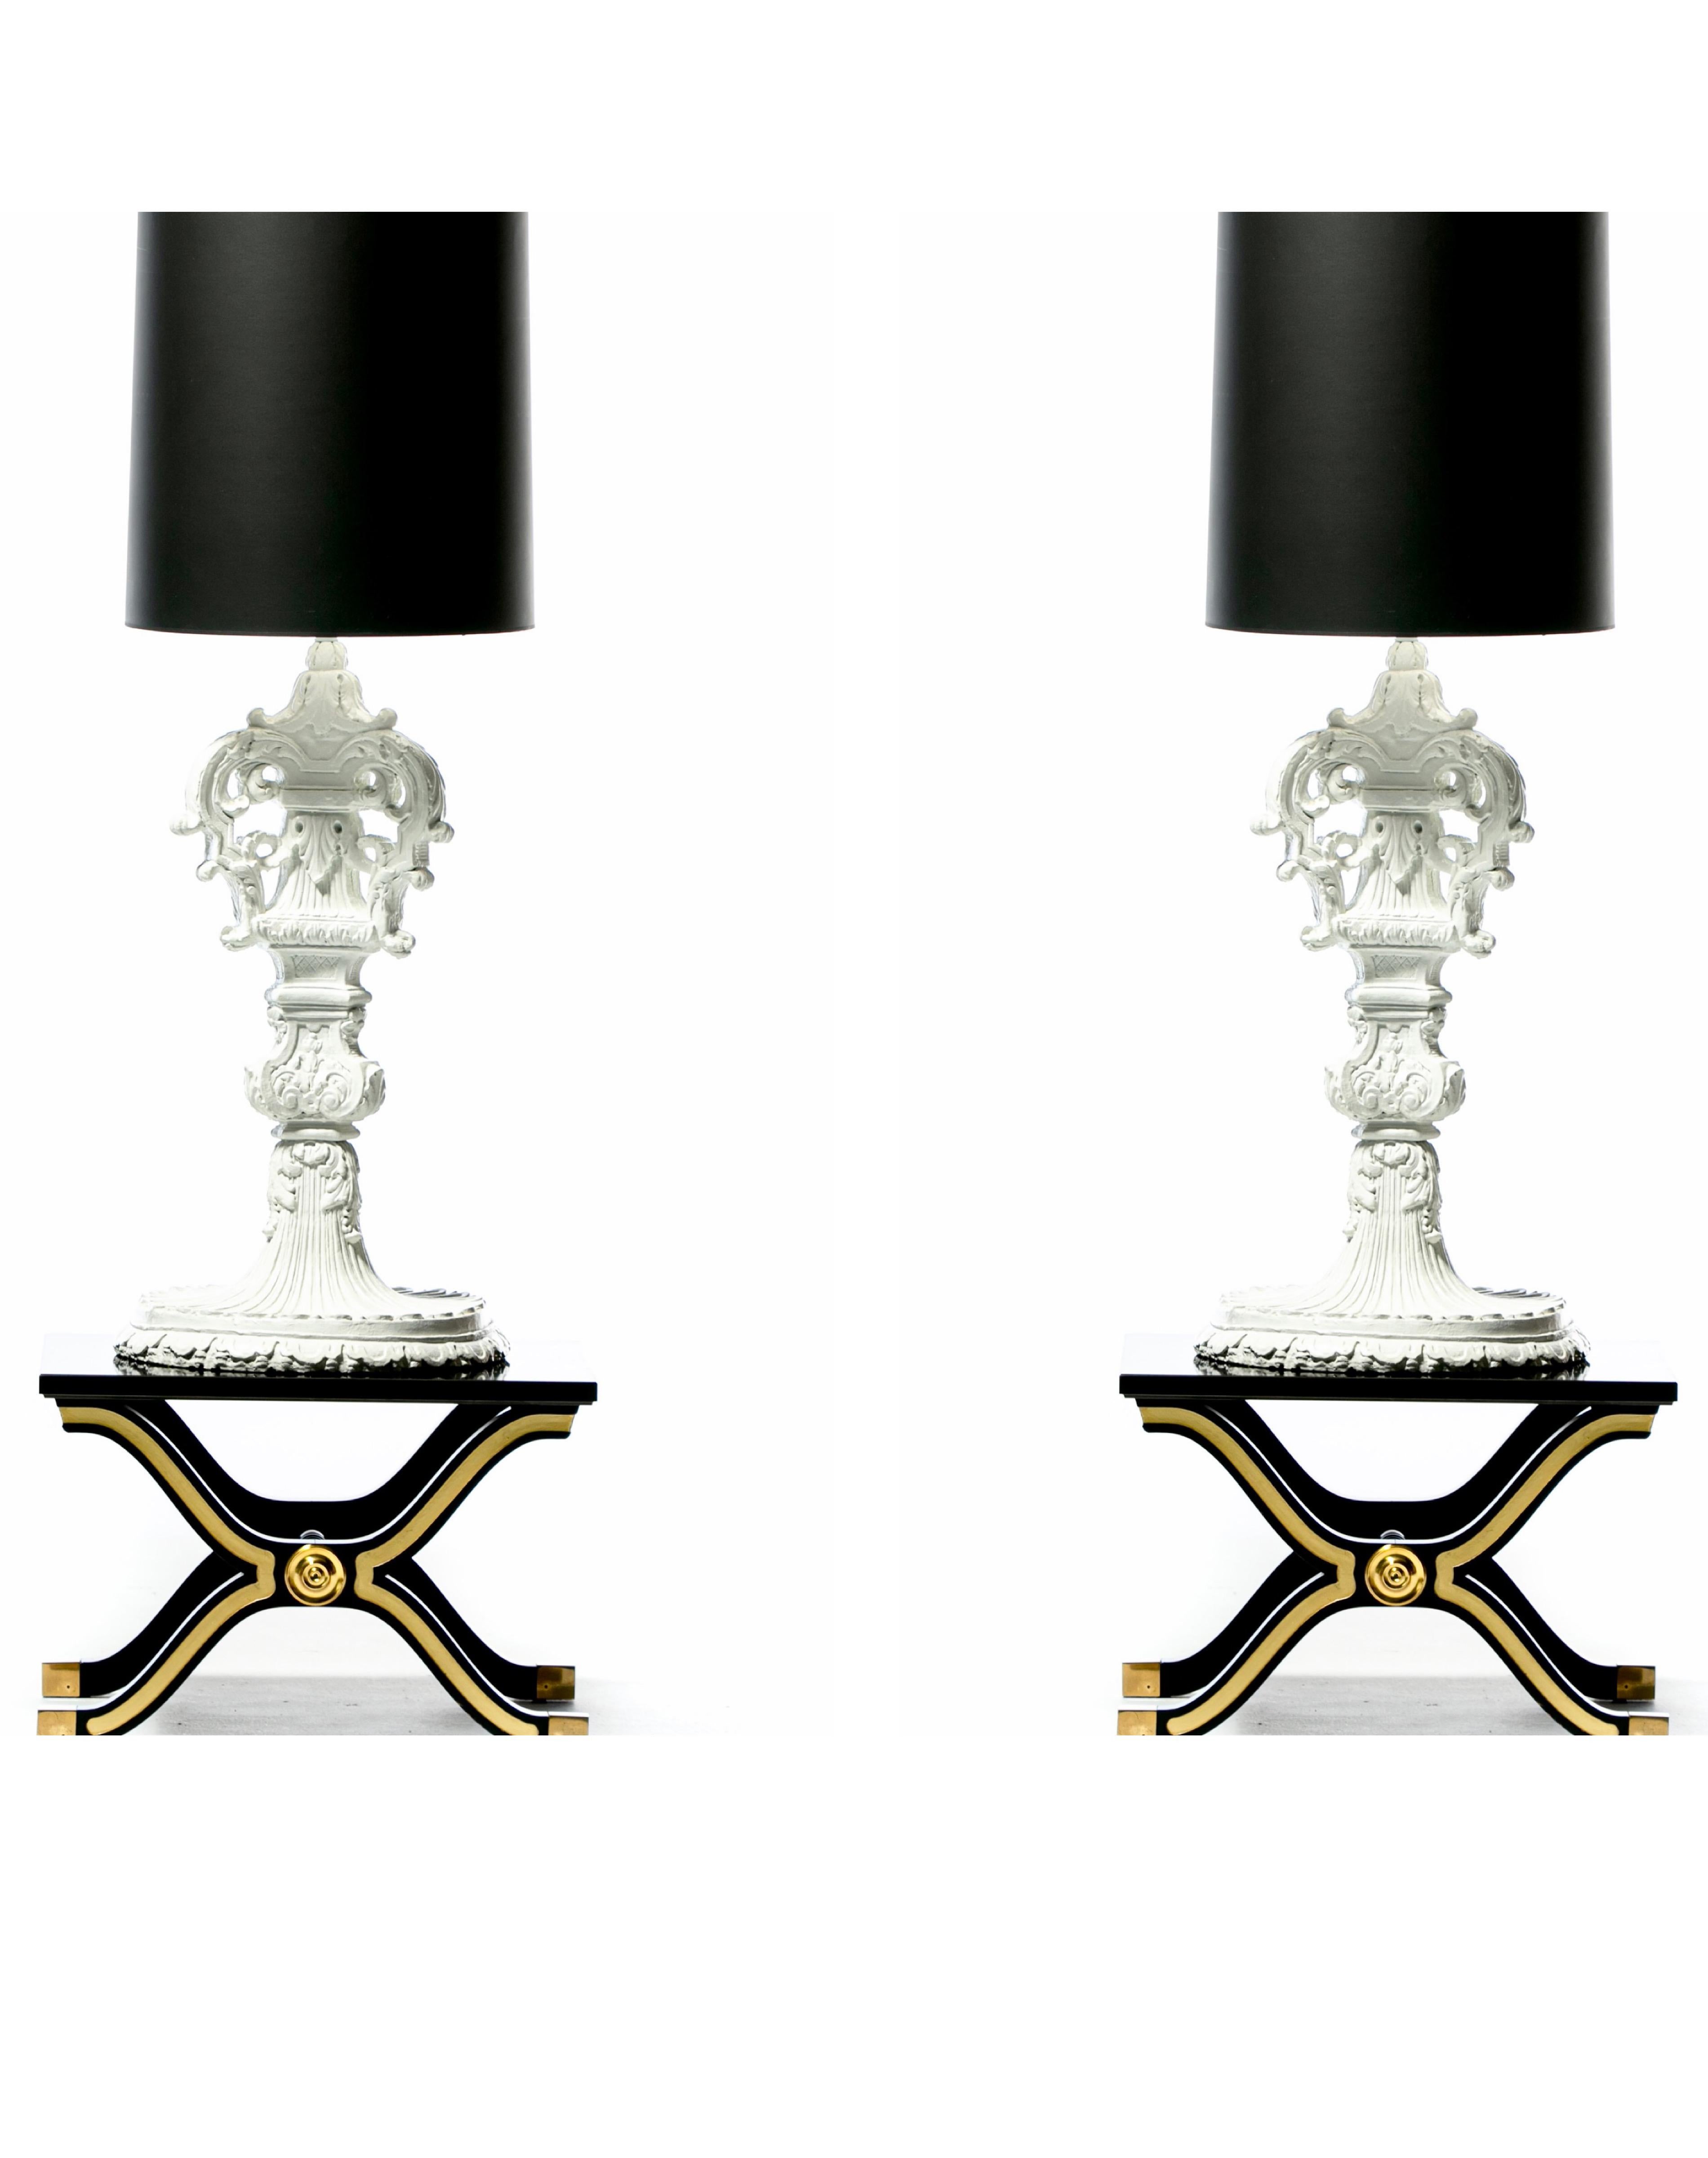 Dieses Paar von Marge Carsons Hollywood Regency Barock-Lampen hat den Dorothy Draper Greenbrier Hotel Grand Lobby WOW-Faktor. Diese Gipslampen als elegant zu bezeichnen, scheint eine offensive Untertreibung zu sein. Kronen aus gestaffelten, schräg